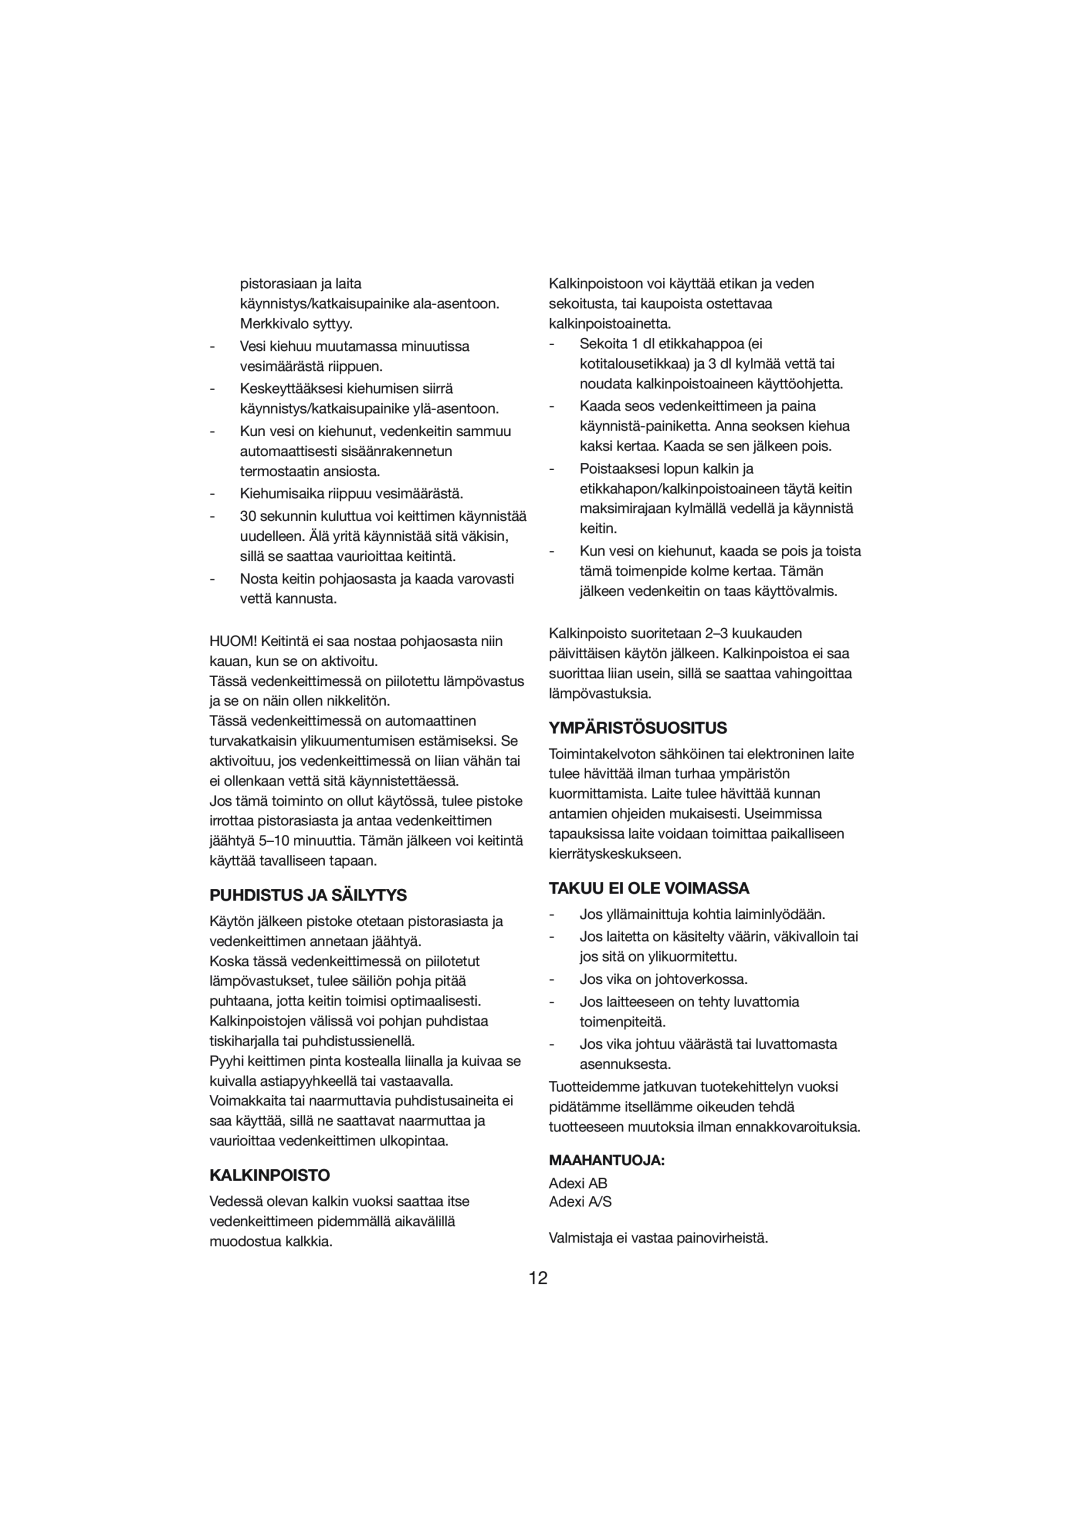 Melissa 245-015 manual Ympäristösuositus, Puhdistus Ja Säilytys, Kalkinpoisto, Takuu Ei Ole Voimassa, Maahantuoja 